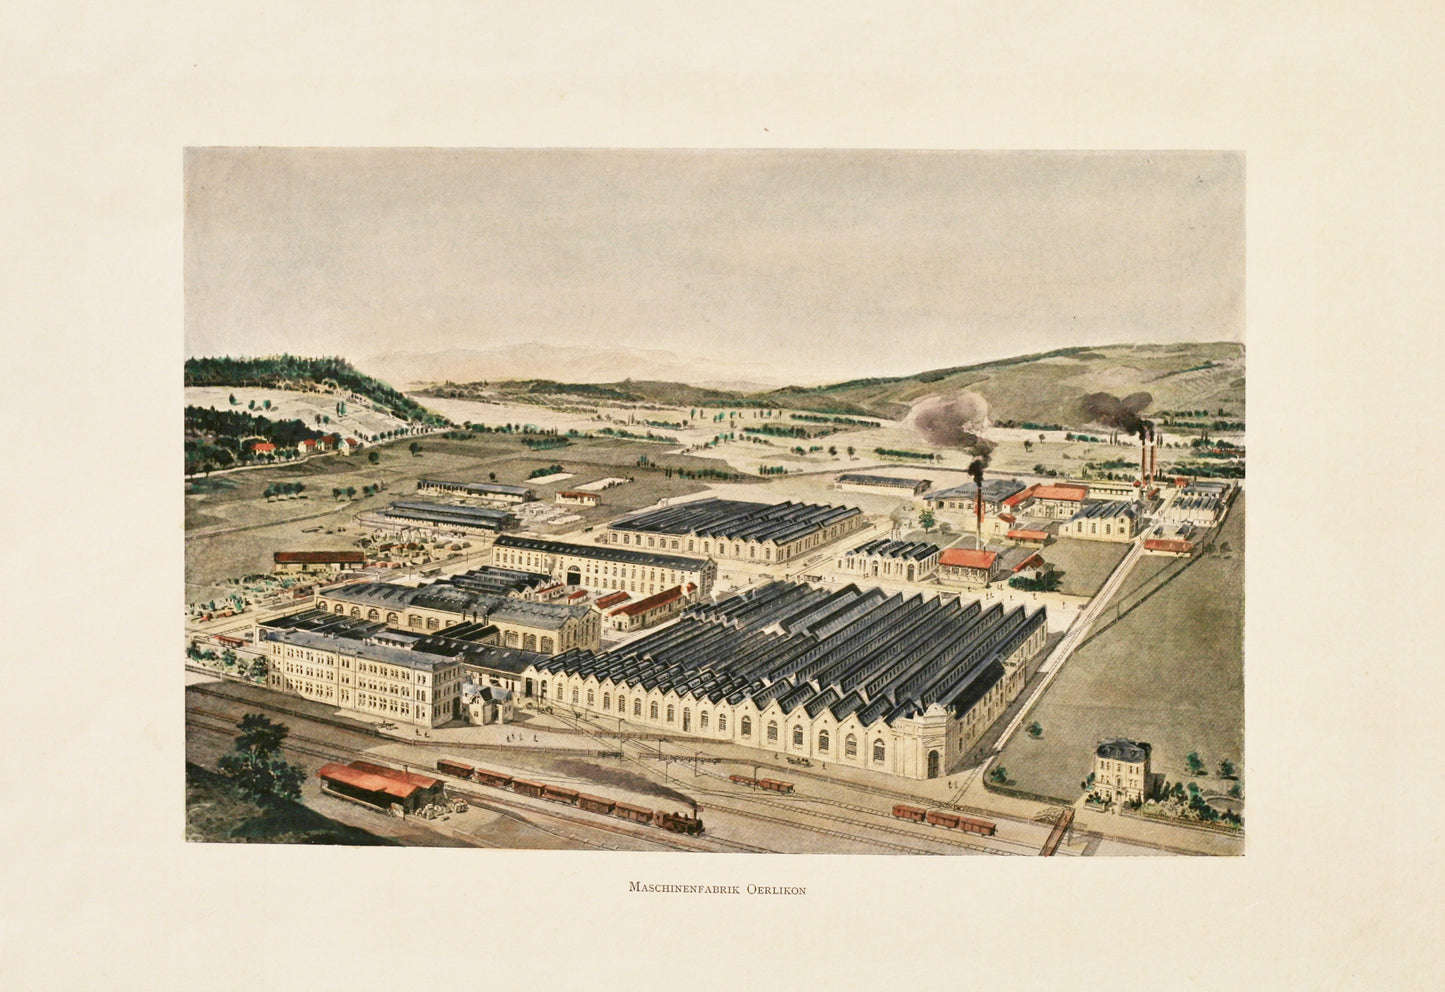 Maschinenfabrik Oerlikon